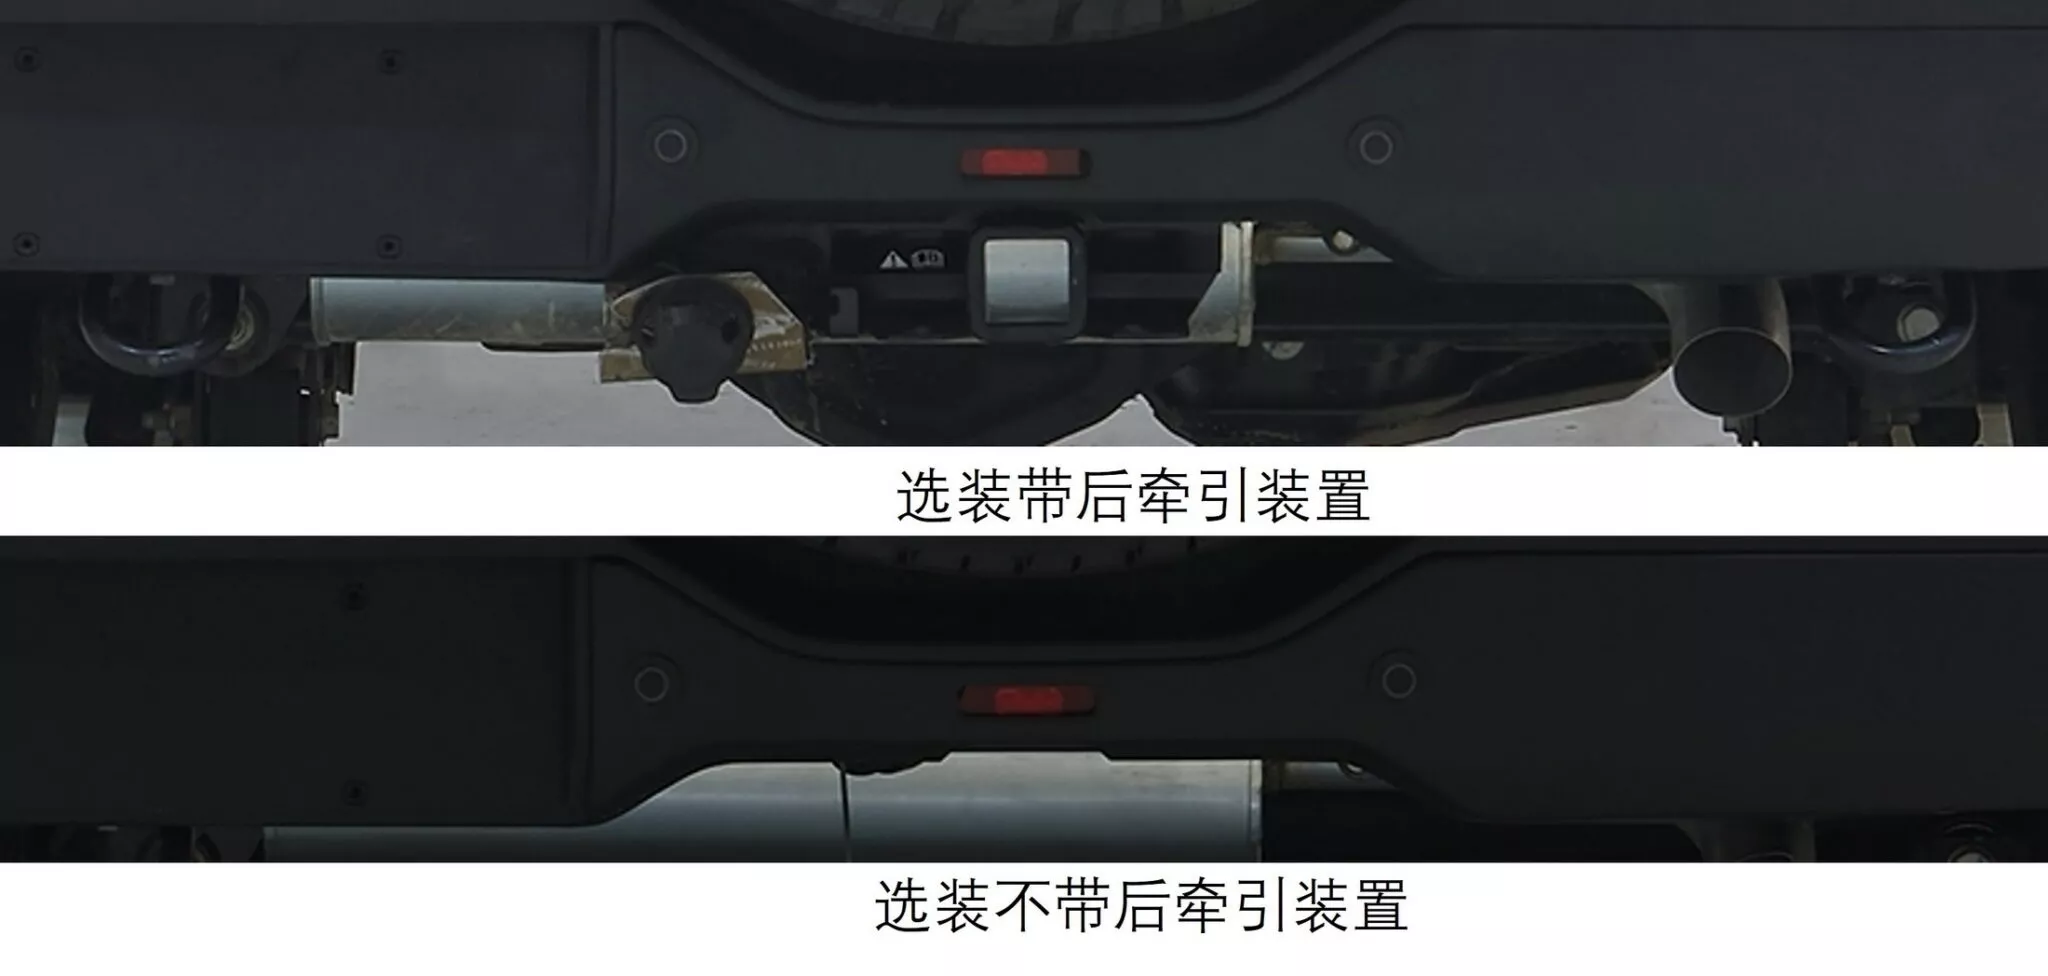 تسريب فورد برونكو النسخة الصينية بتحديثات خاصة ومحرك 2.3 لتر تيربو 4